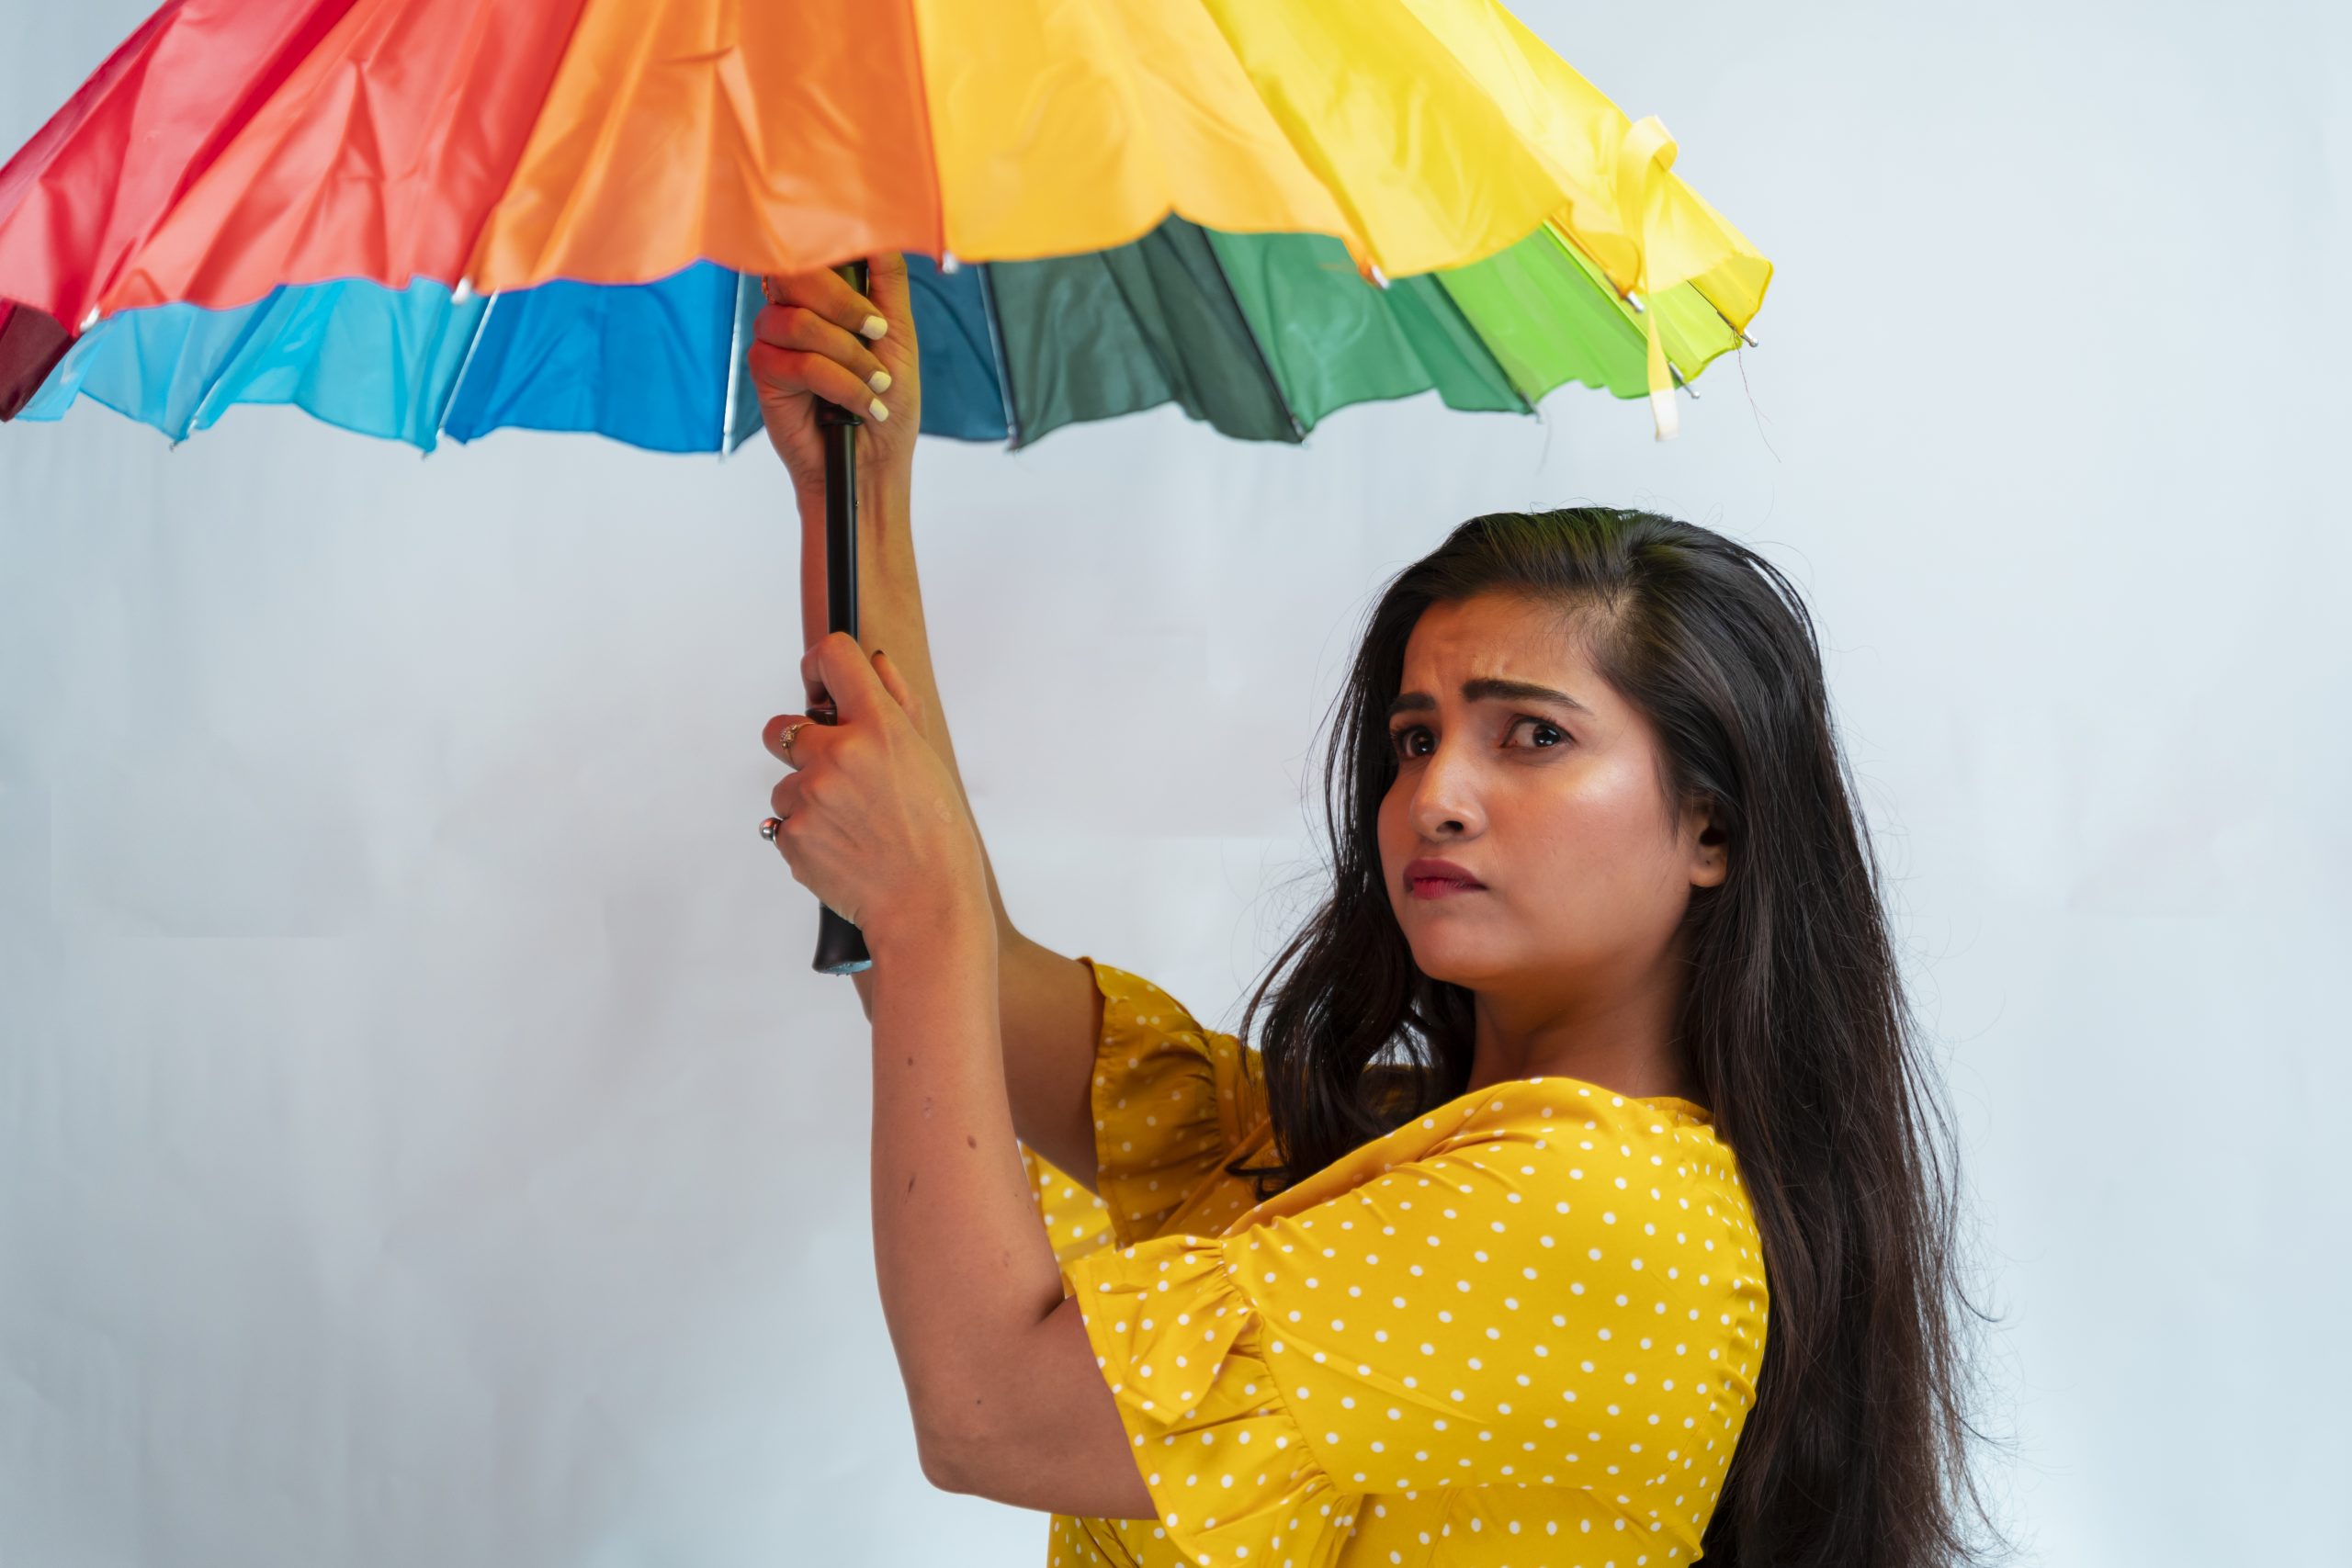 A girl with umbrella